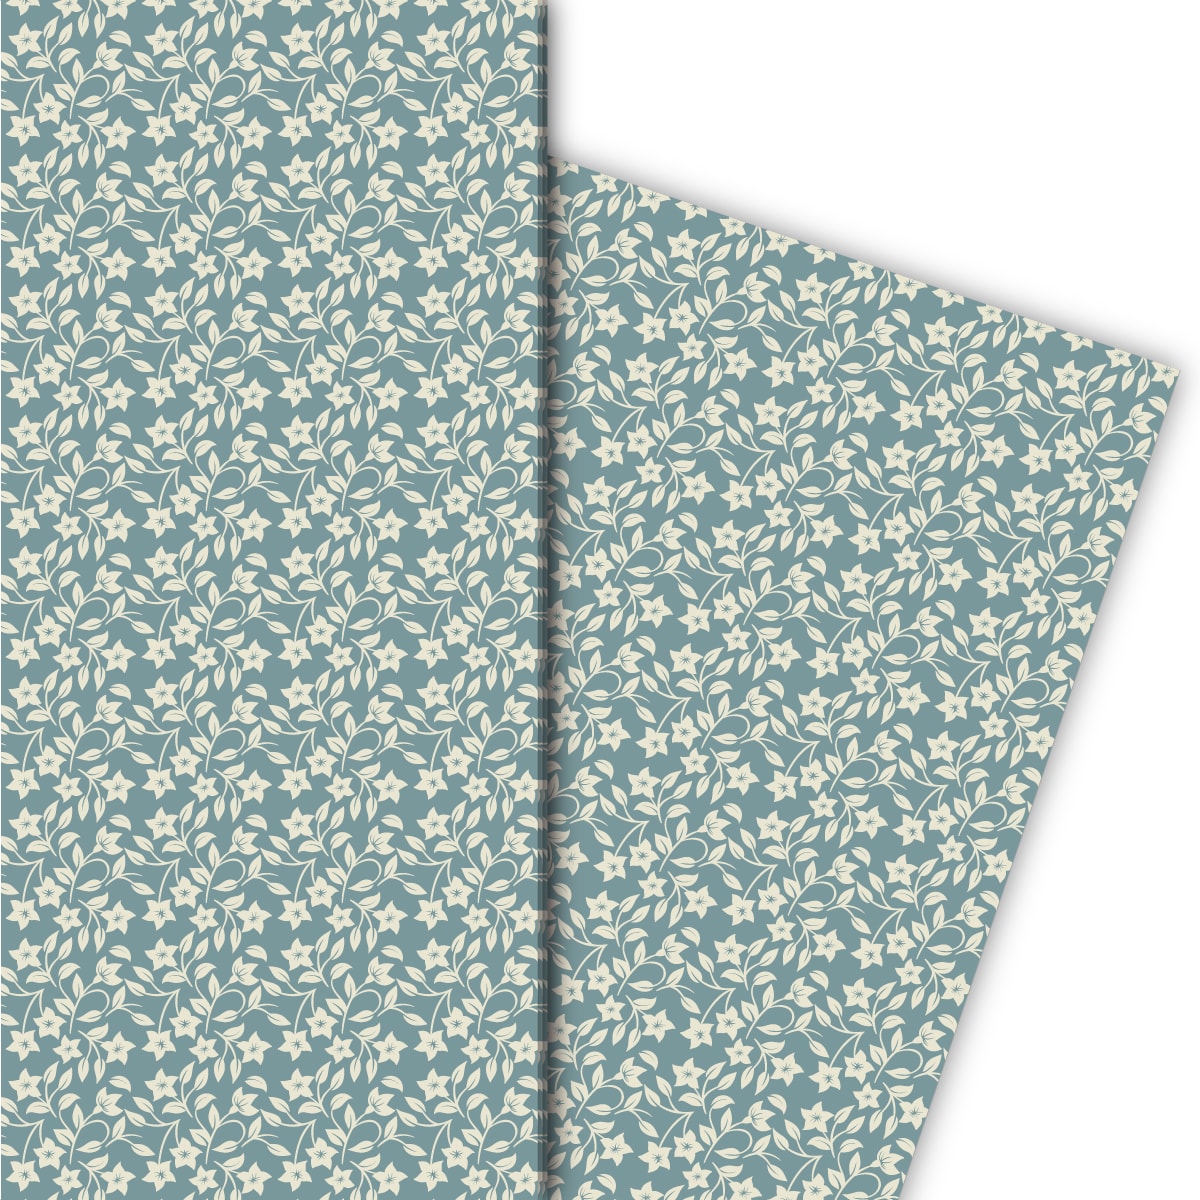 Kartenkaufrausch: Zartes Geschenkpapier mit Retro aus unserer florale Papeterie in blau